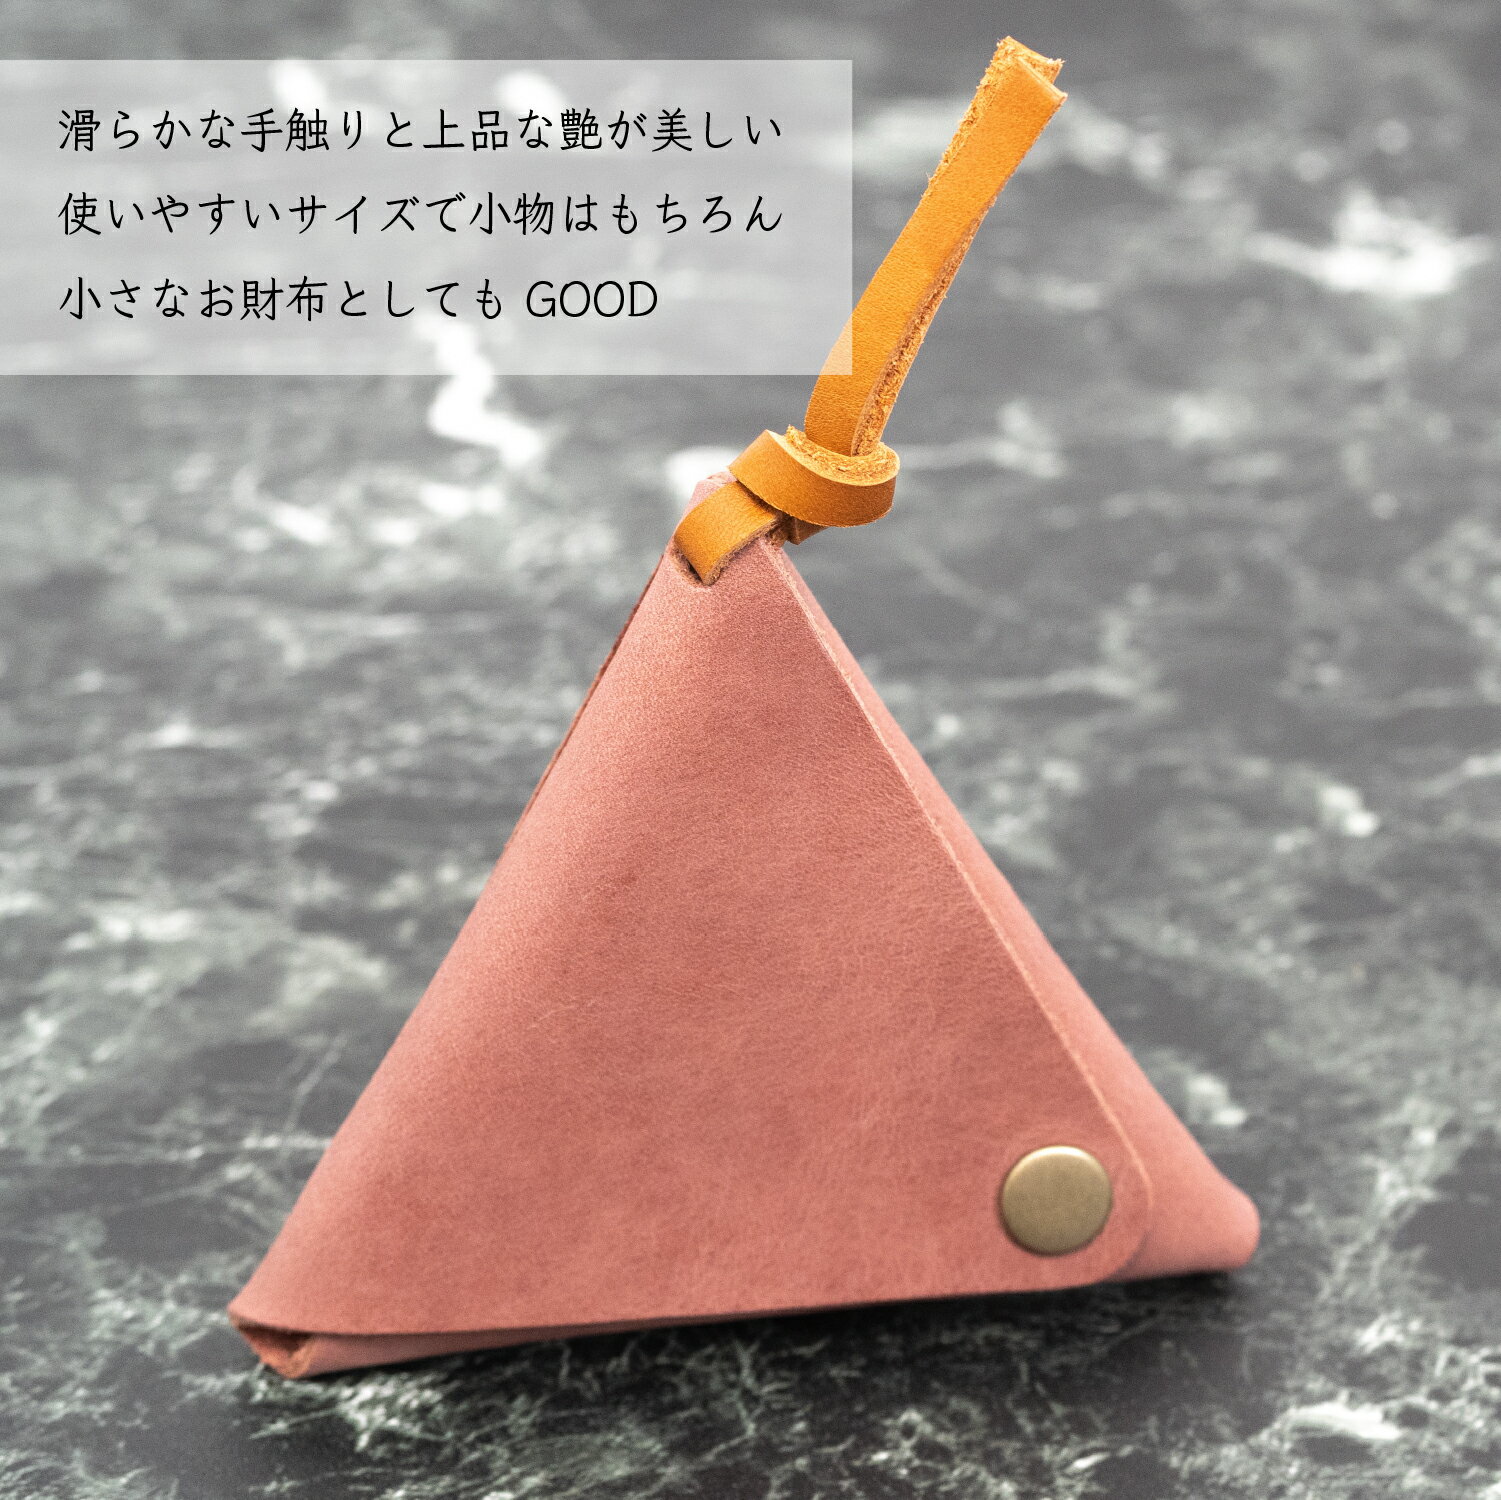 【ふるさと納税】本革三角小物入れ 本革 財布 日本製 手作り 一点もの コインケース A053-17